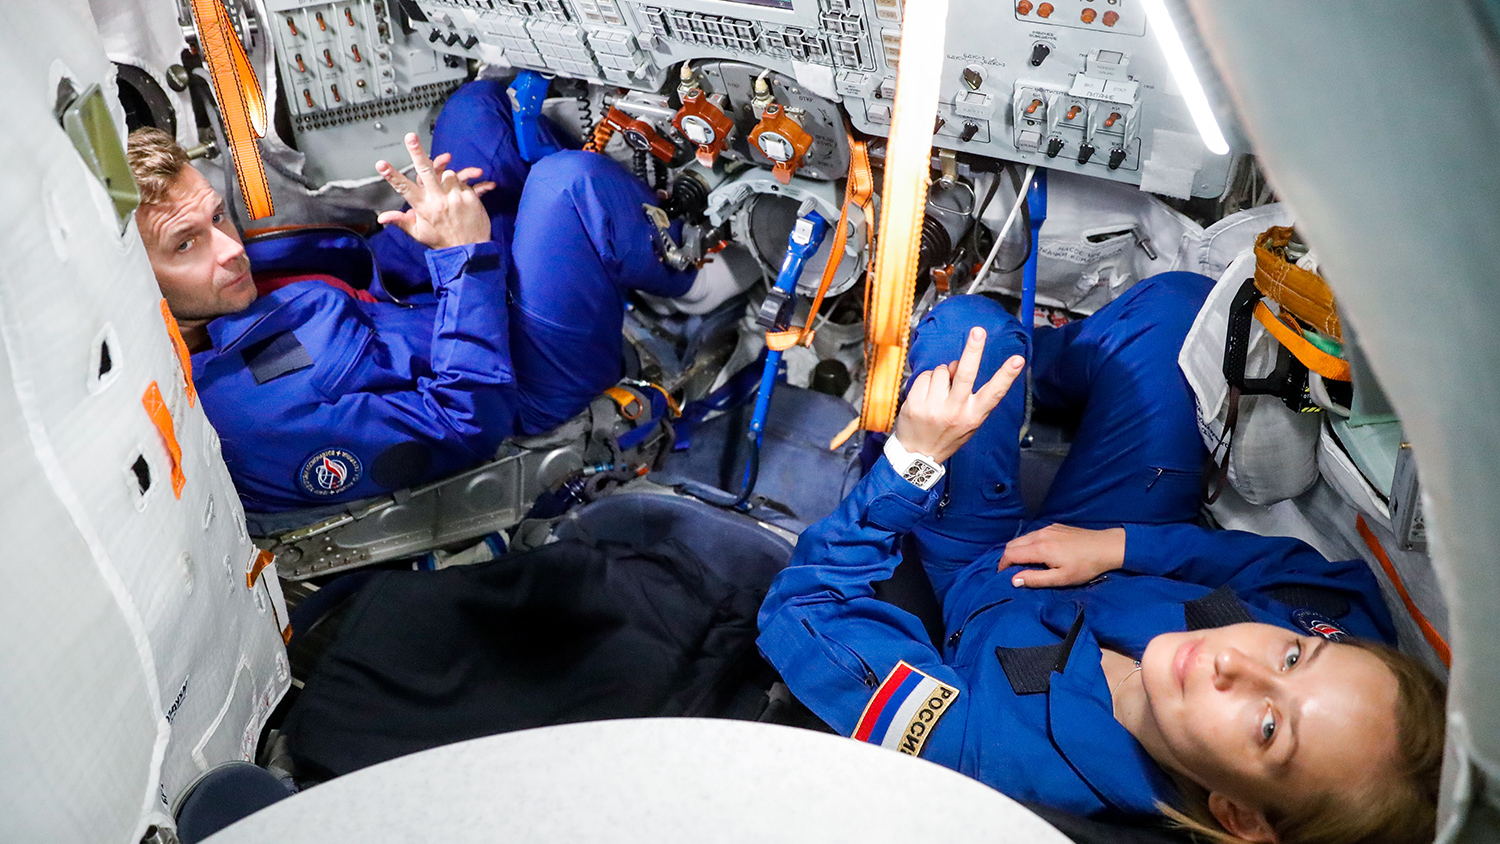 Вызов принят: Юлия Пересильд и Клим Шипенко отправились в космос на съёмки фильма